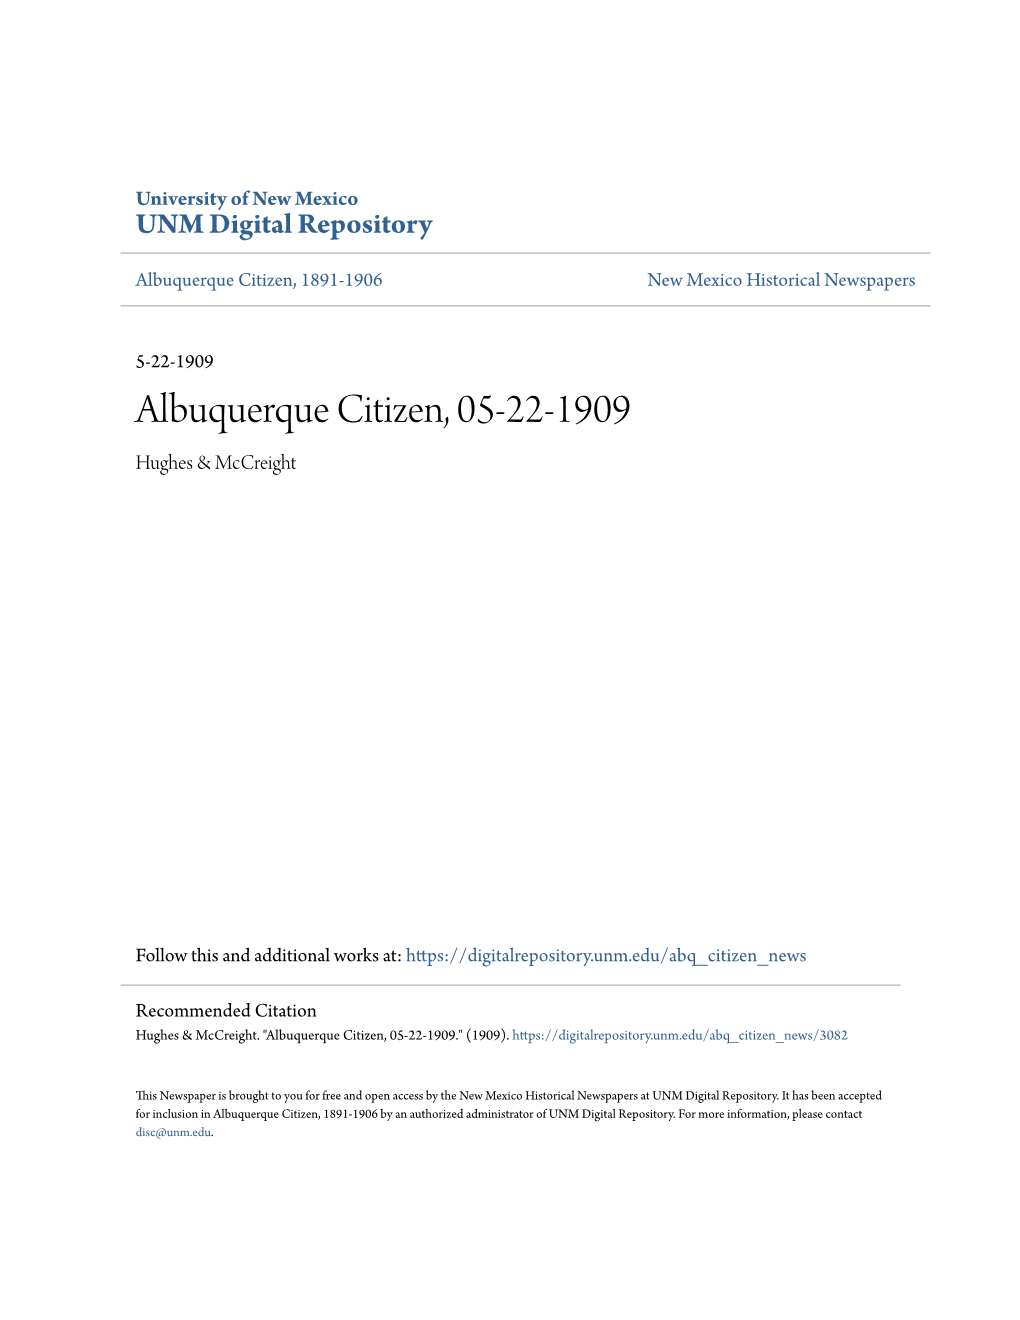 Albuquerque Citizen, 05-22-1909 Hughes & Mccreight